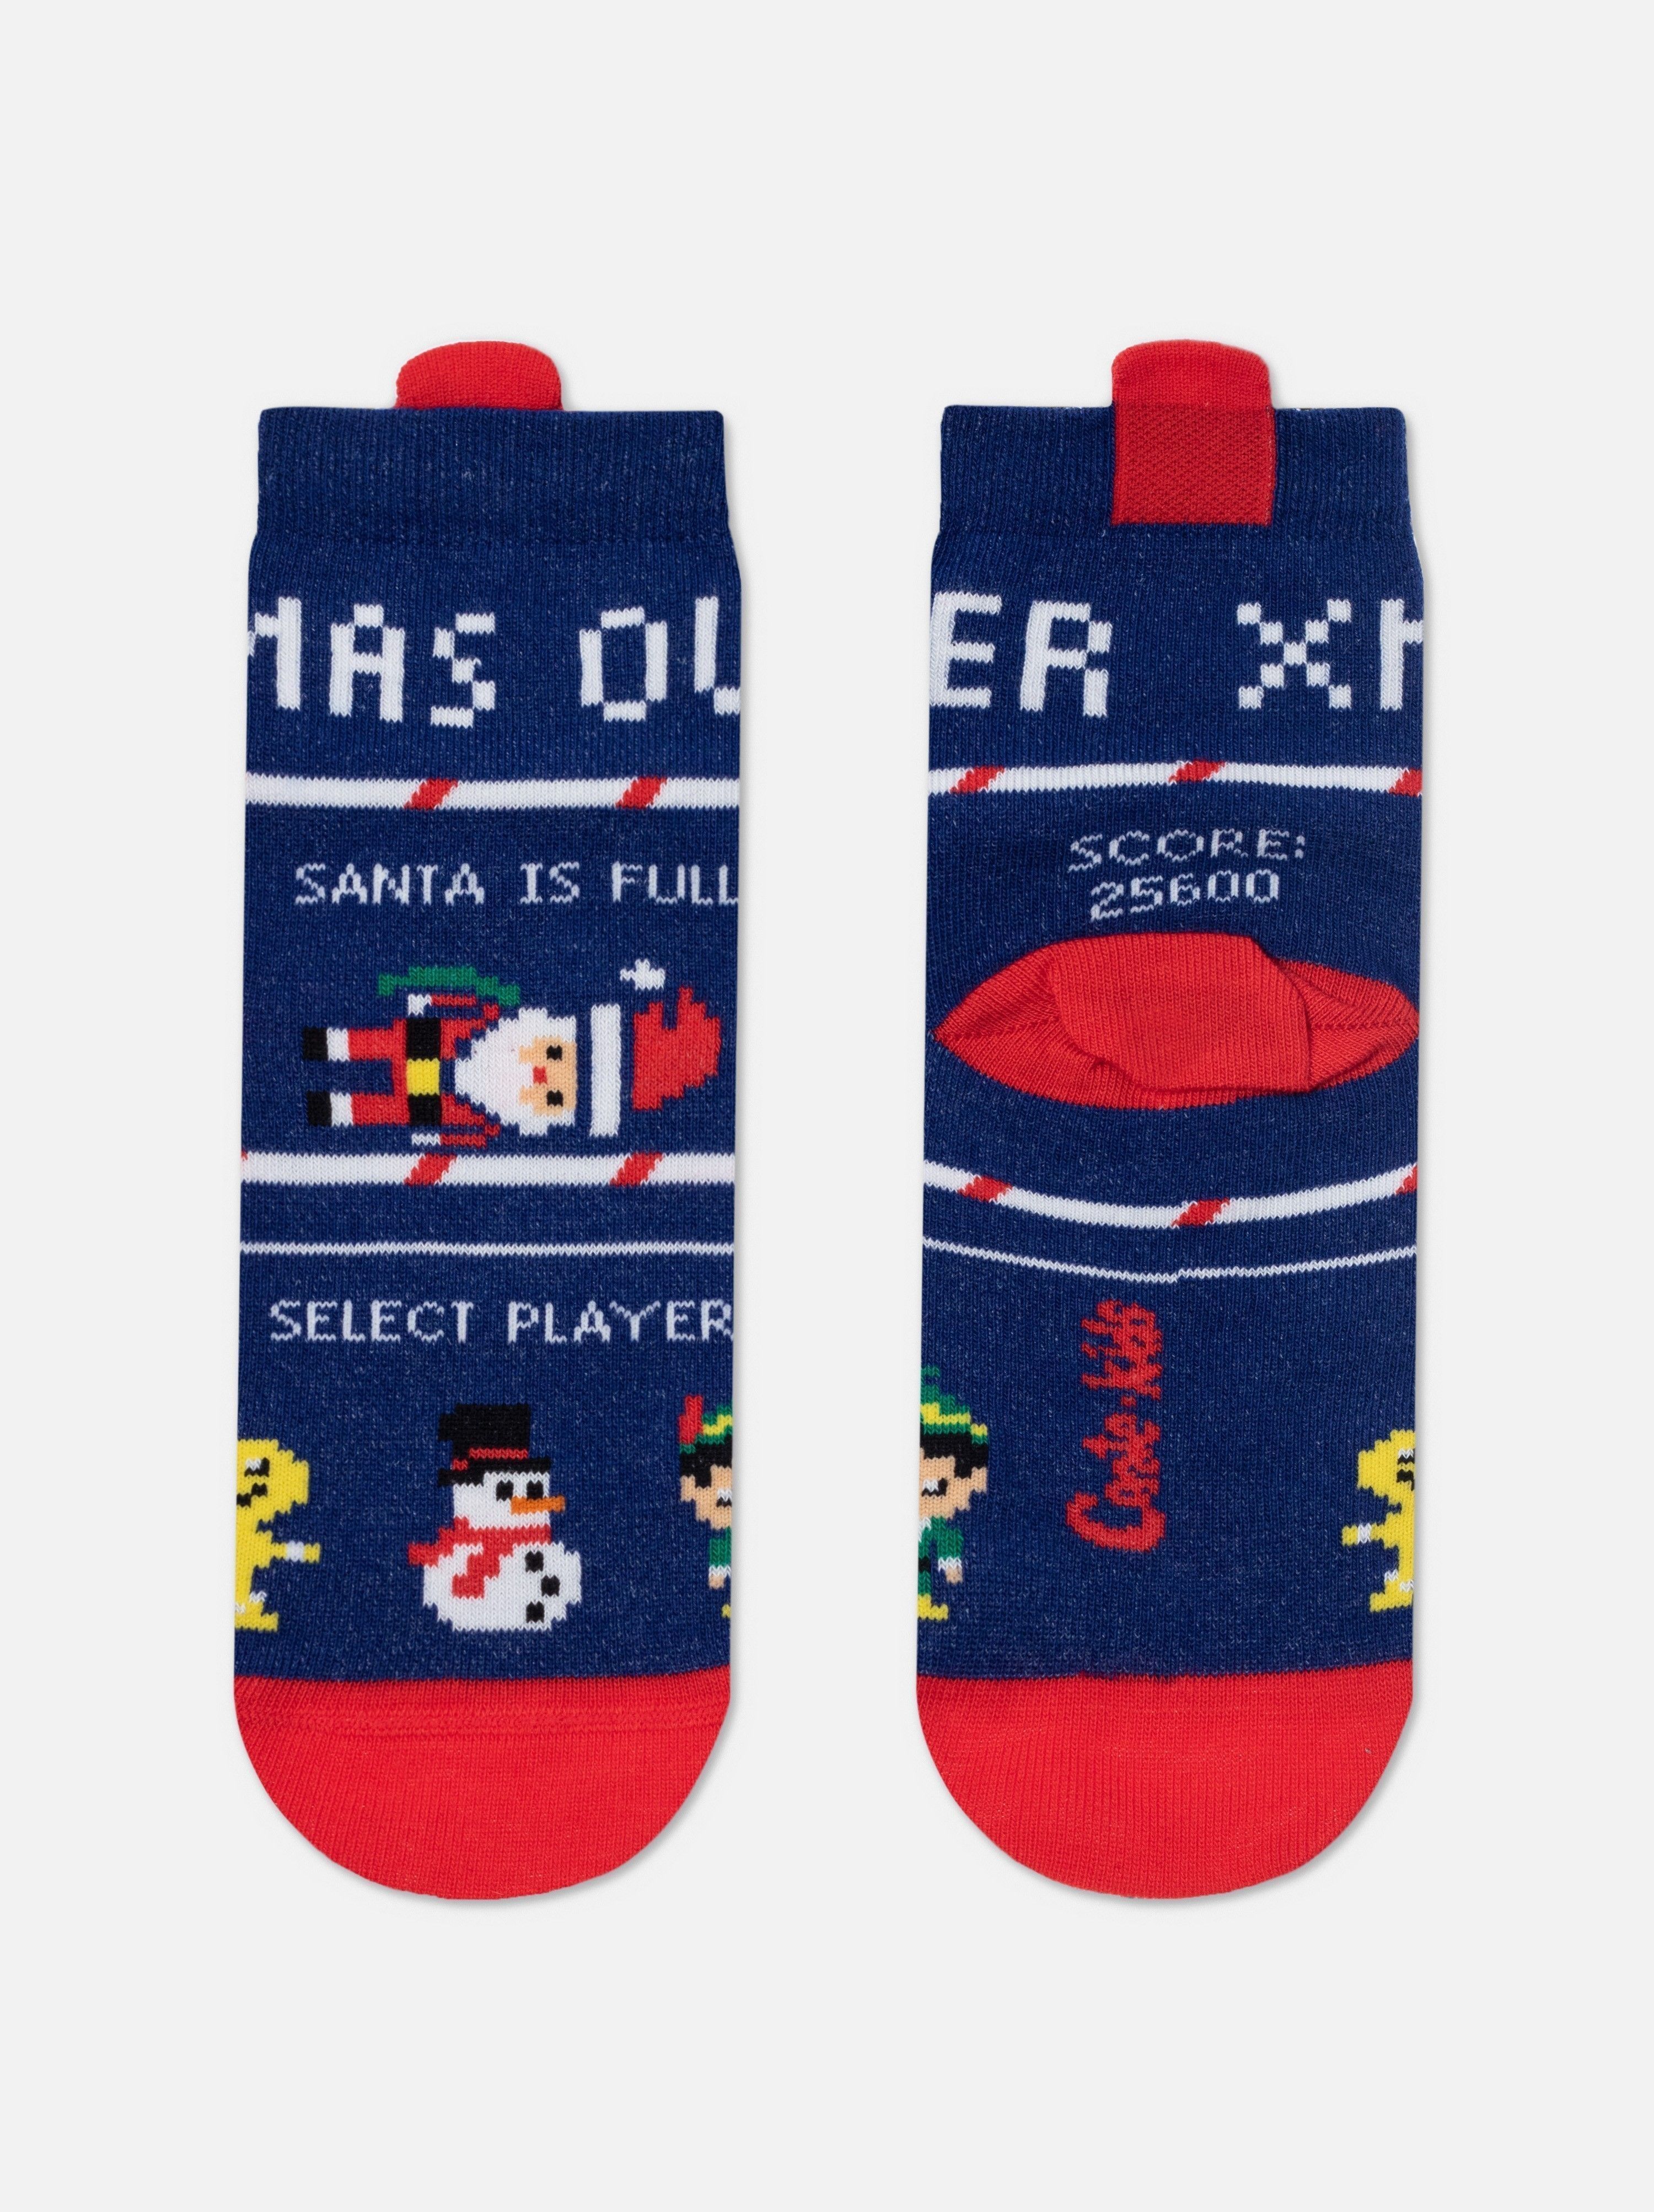 Новогодние носки с пикотом «Xmas player» Conte ⭐️, цвет синий, размер 13-14